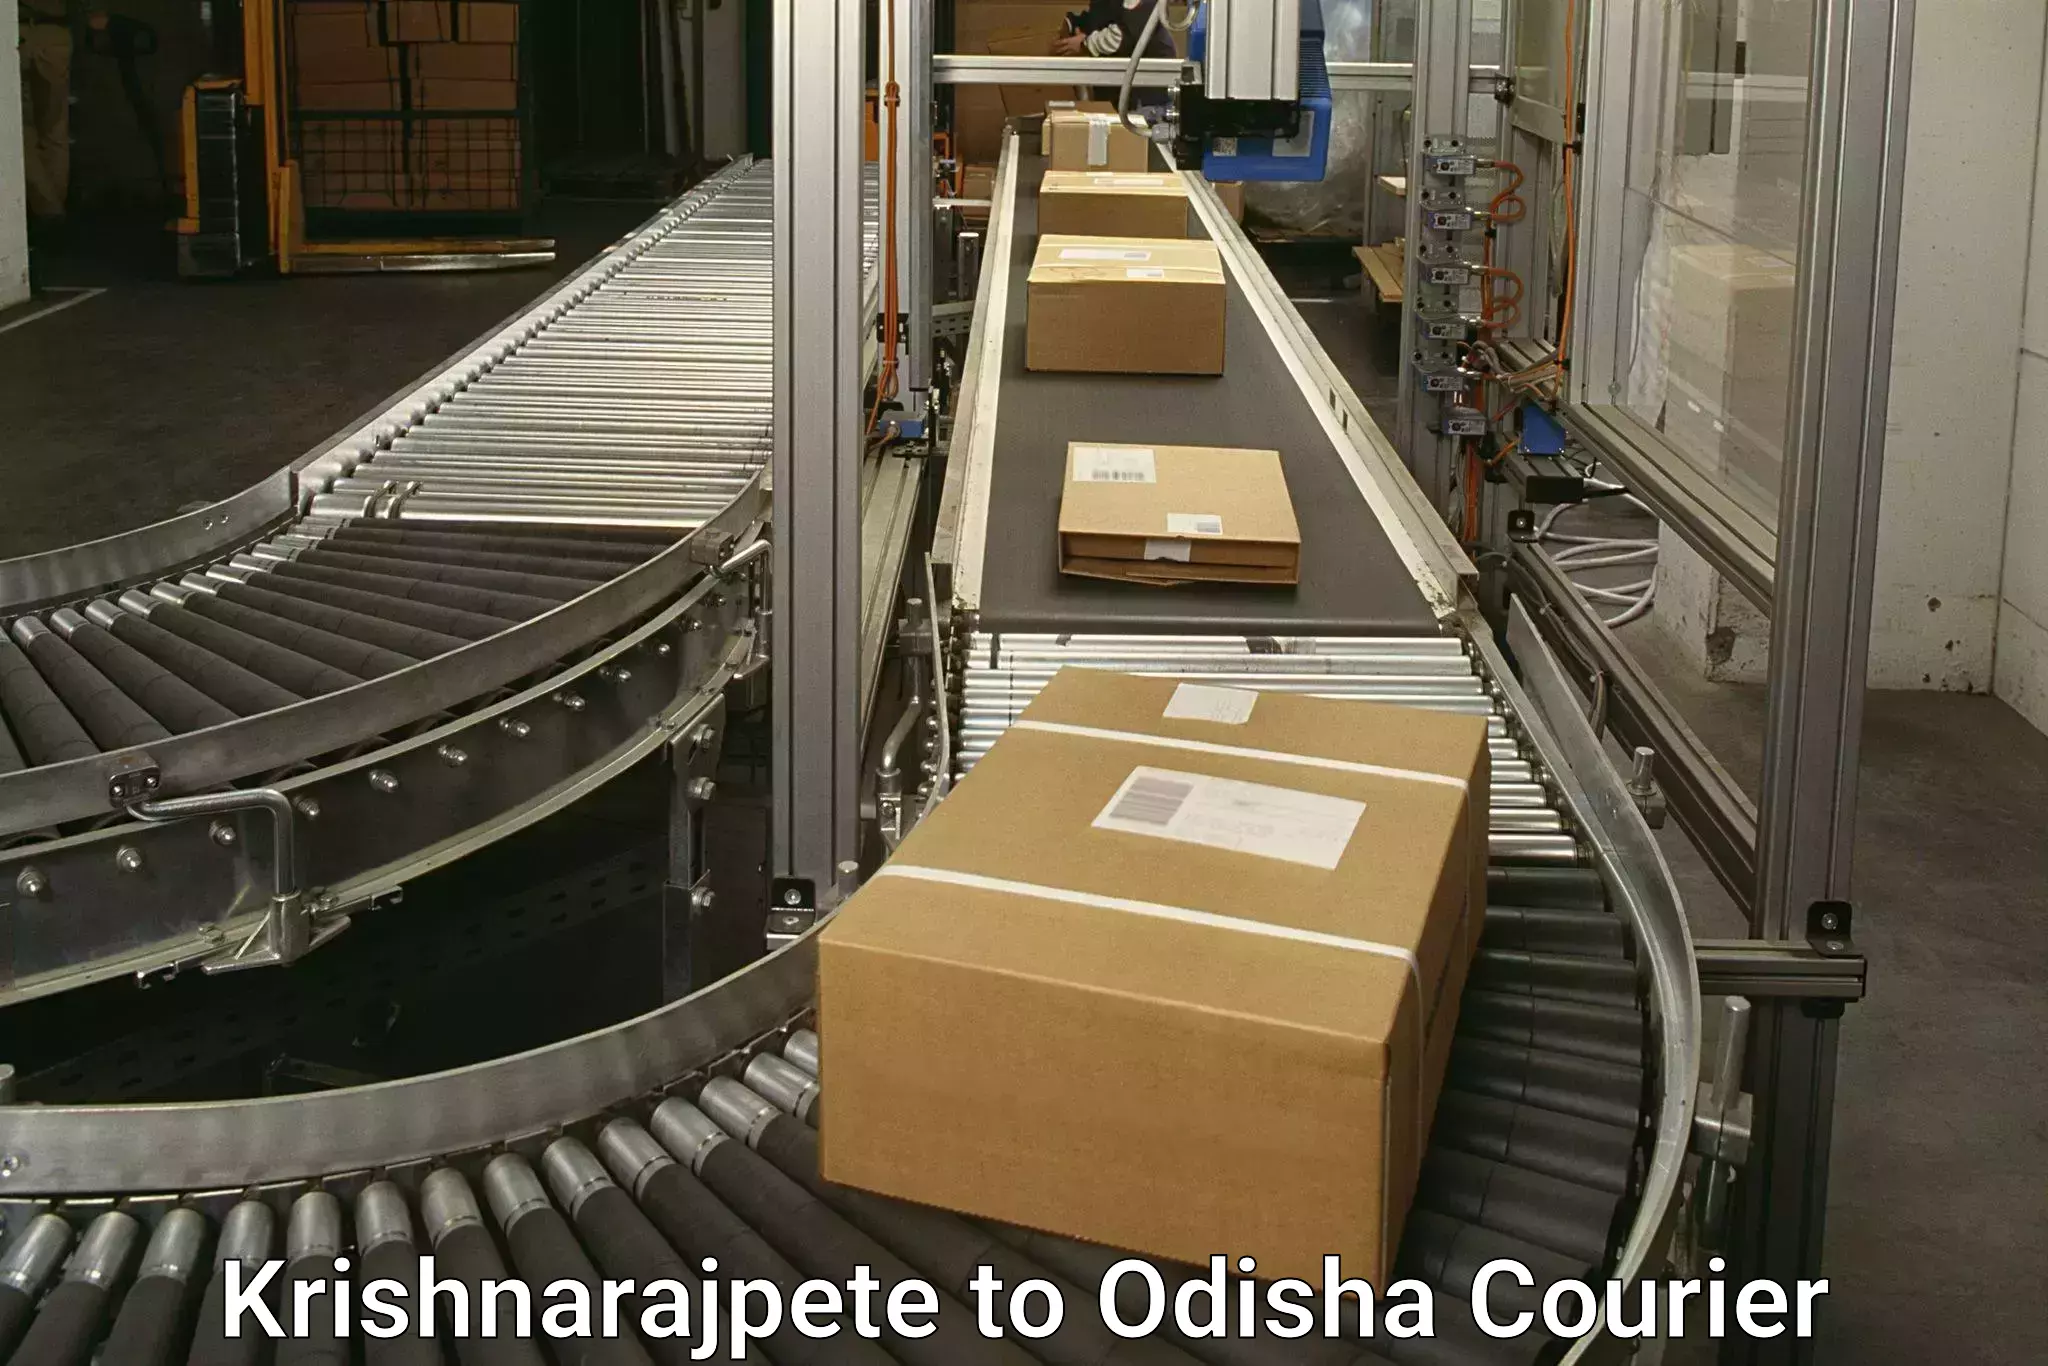 Express logistics providers Krishnarajpete to Boudh